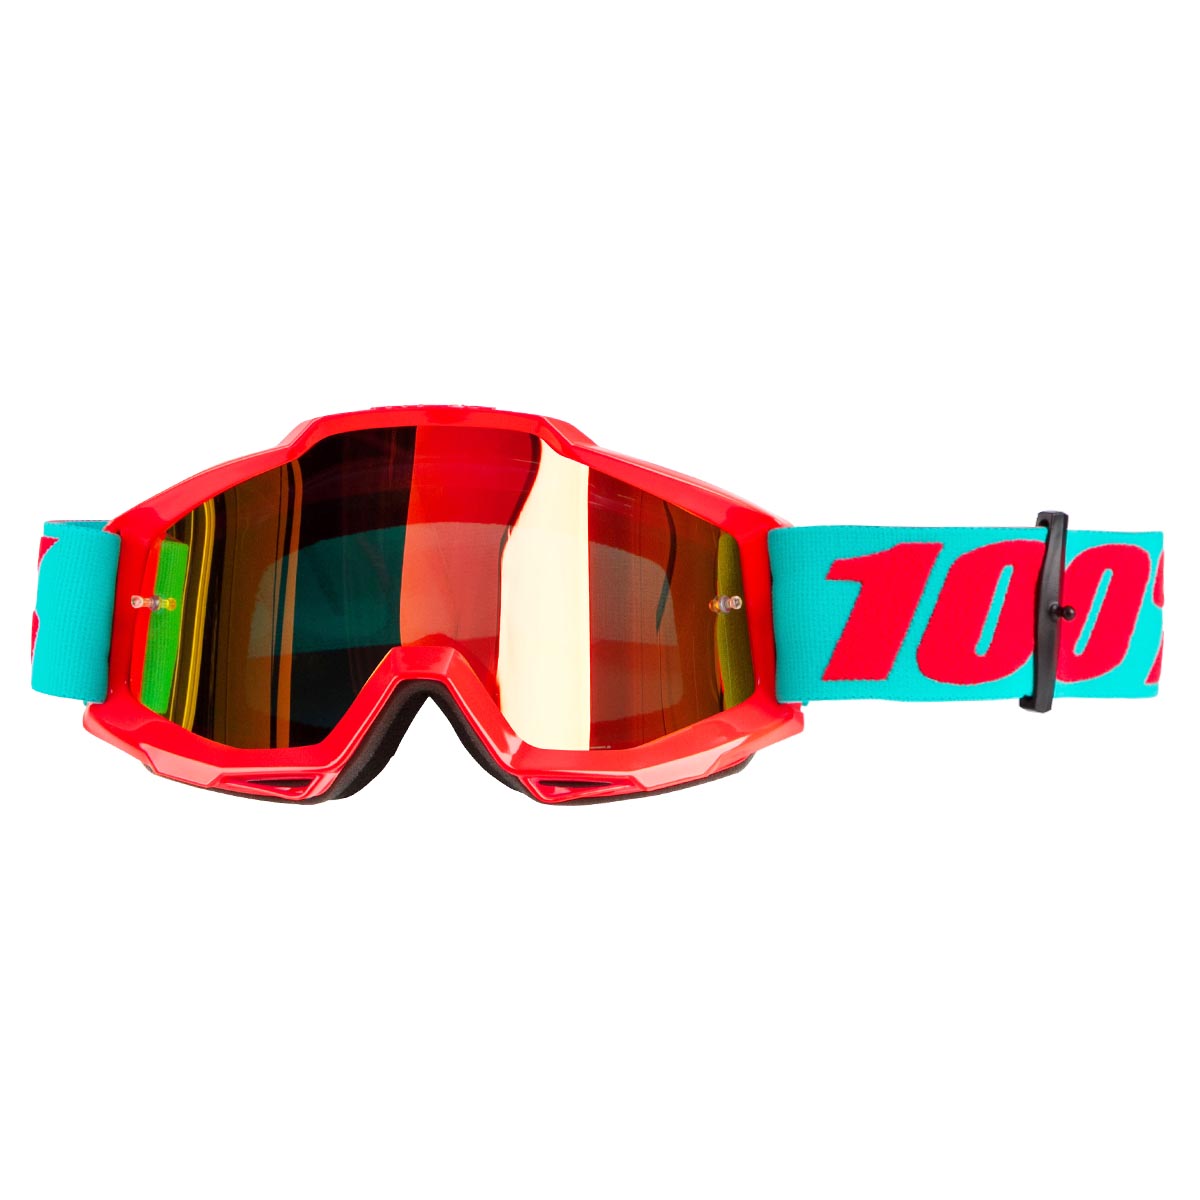 100% Goggle Accuri Passion Orange - Mirror Red Anti-Fog